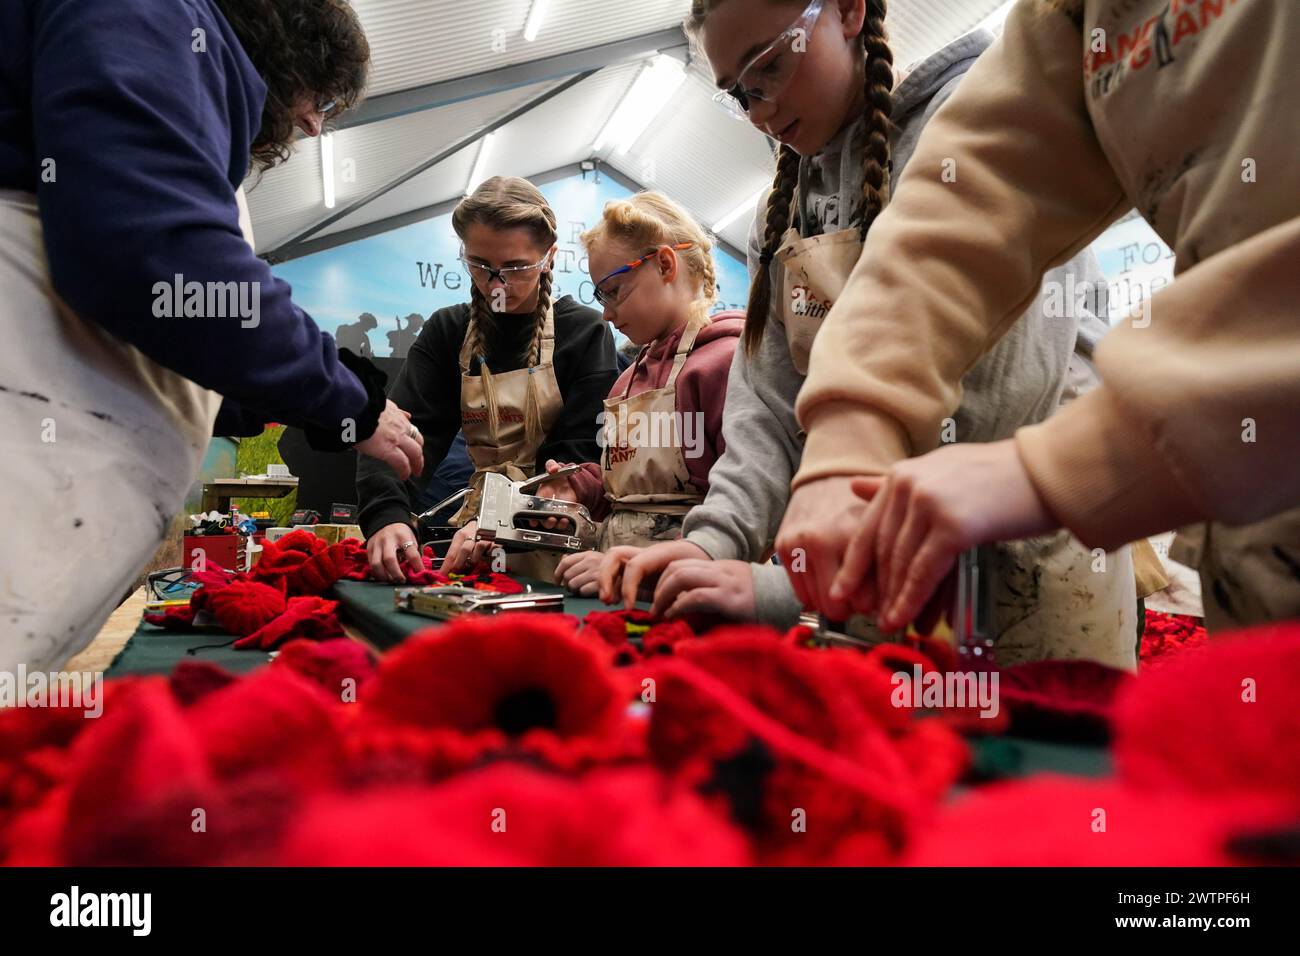 Strickmohn wird in einer Werkstatt in Oxford hergestellt, in der über 200 Silhouetten von Soldaten des Zweiten Weltkriegs hergestellt werden, bevor sie zum 80. Jahrestag des D-Day in die Normandie gebracht werden. Bilddatum: Samstag, 16. März 2024. Stockfoto